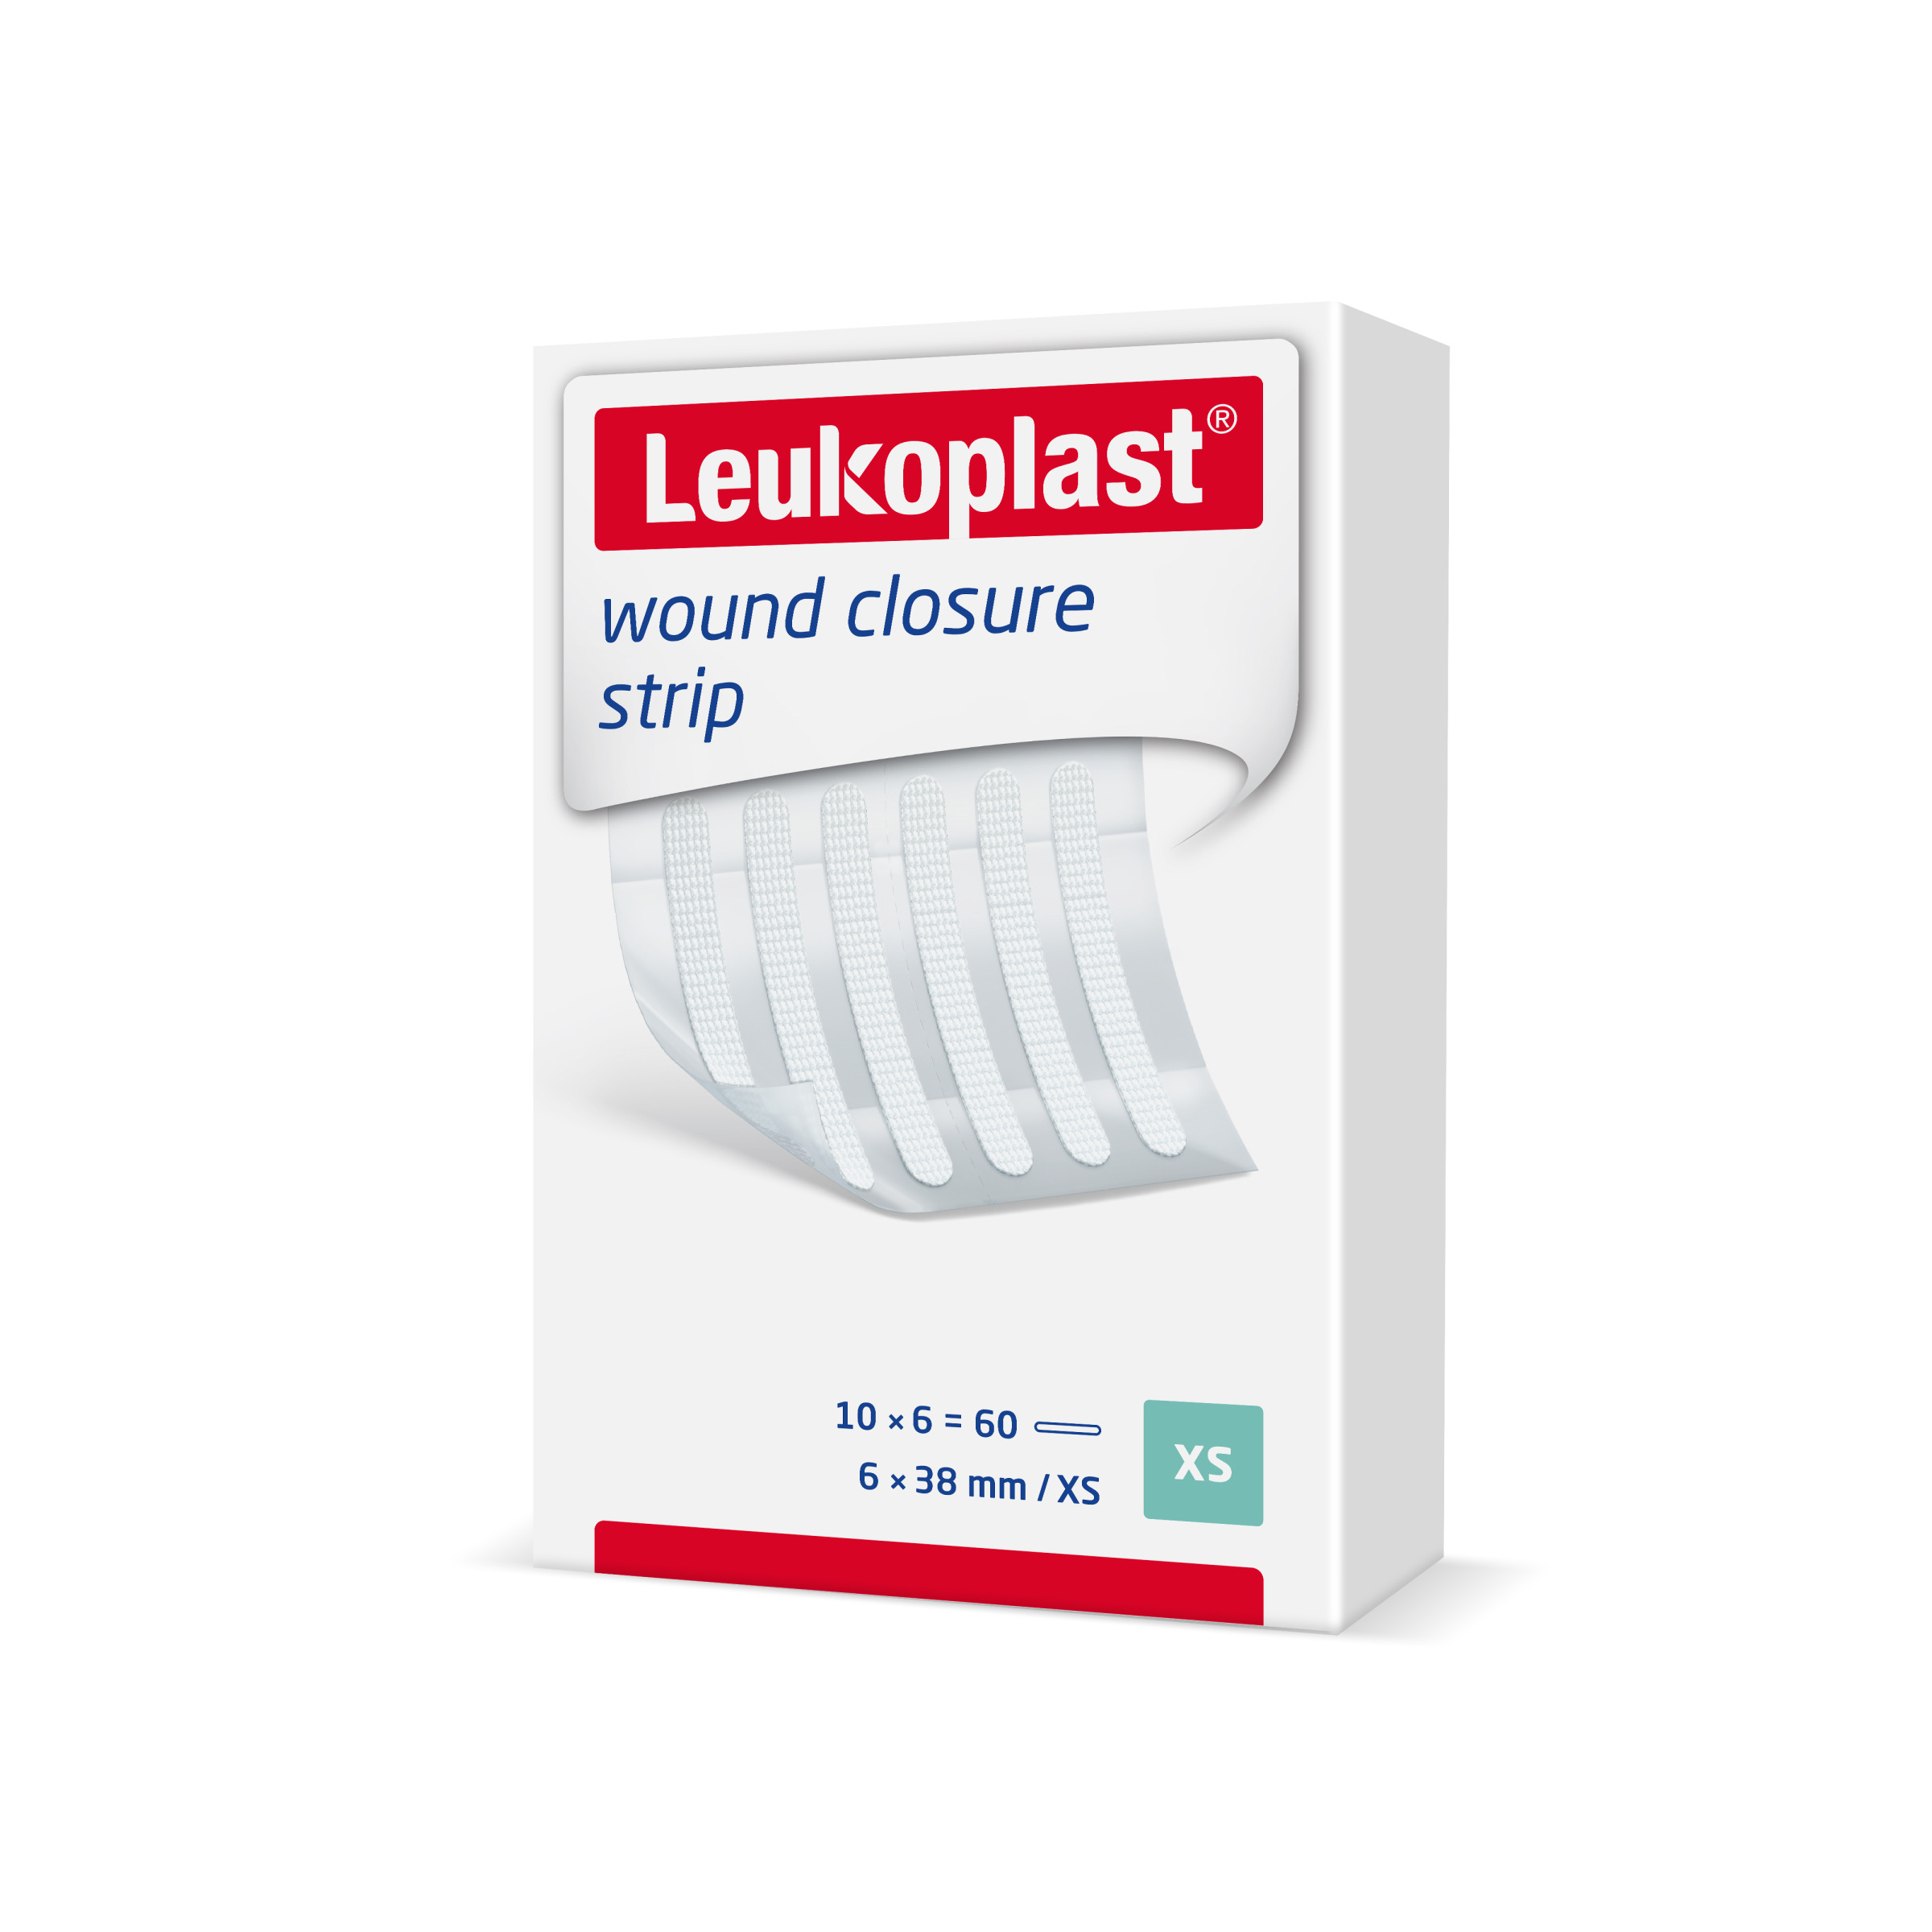 Leukoplast wound closure Strip 6x38mm, weiß, 10x6 Stck., PZN 17875665